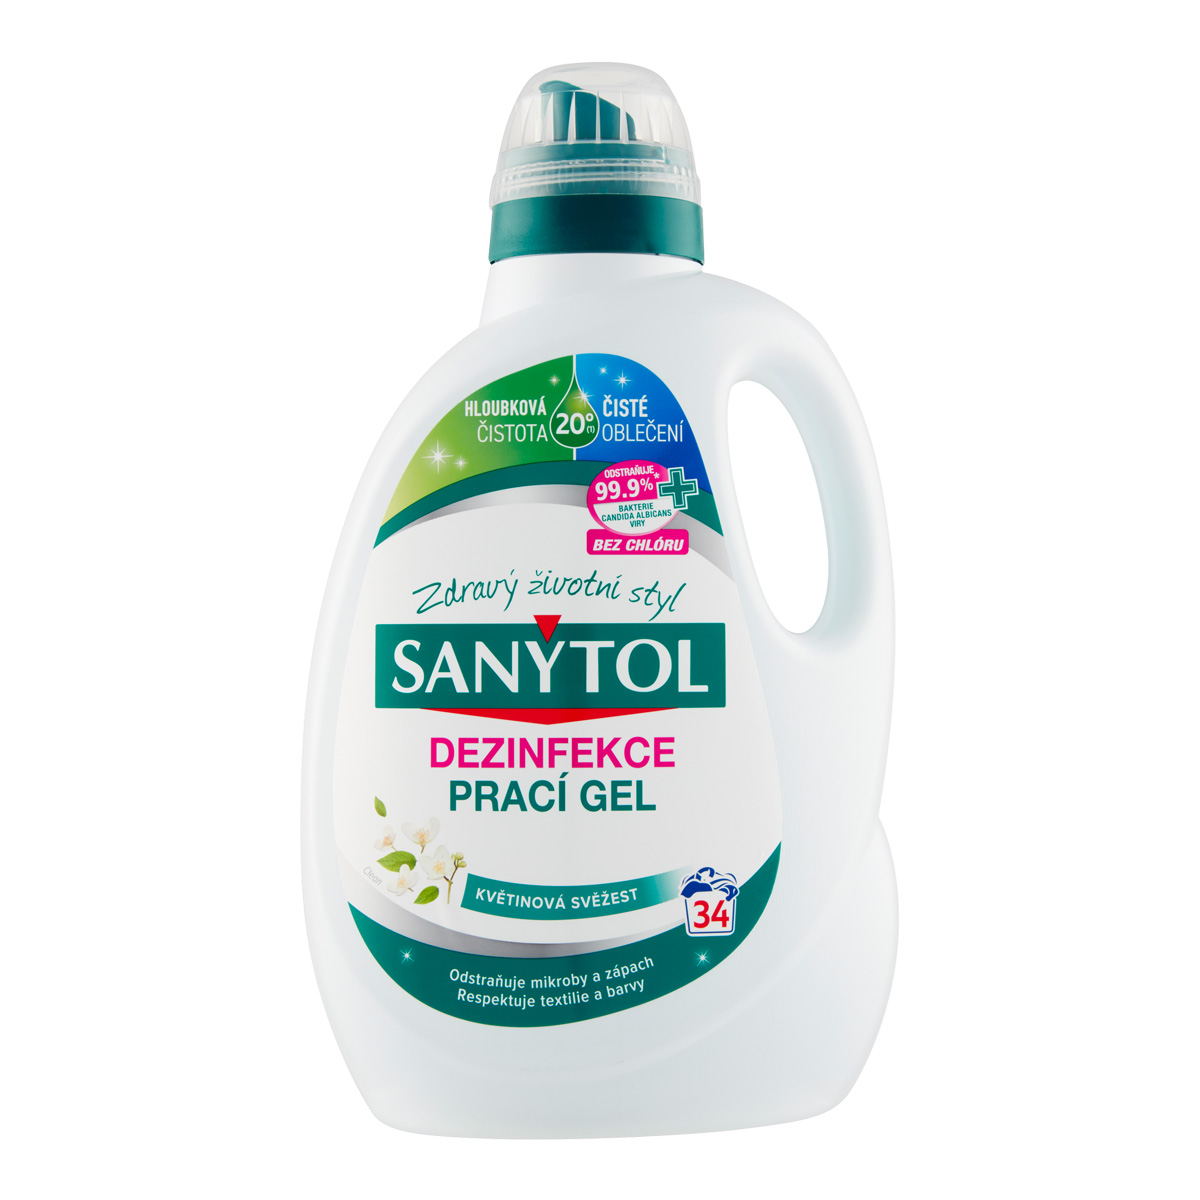 Sanytol dezinfekční prací gel 1,7 l  květinová svěžest, 34 dávek